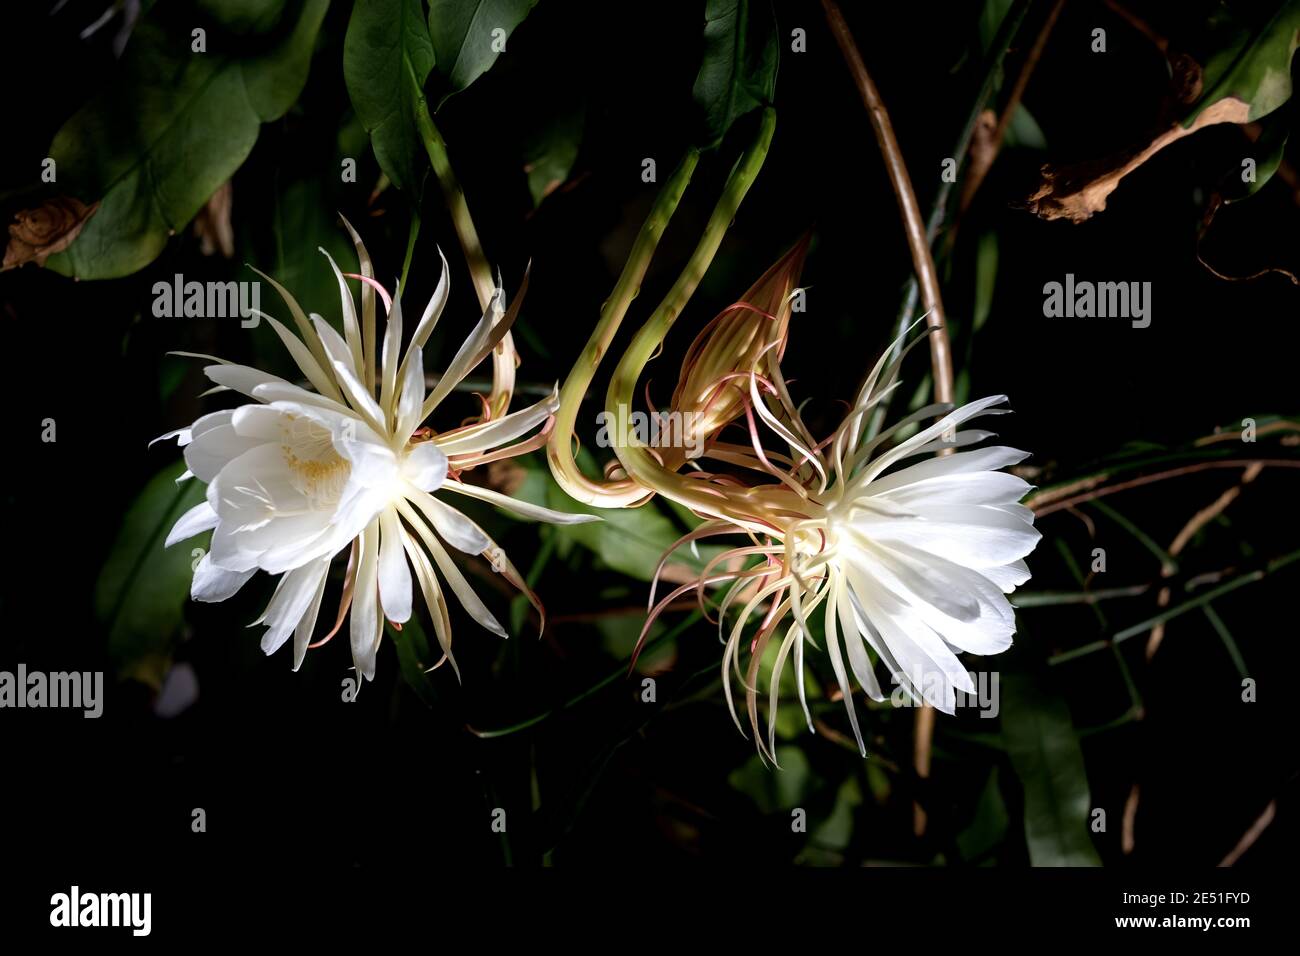 Vue de face de deux fleurs blanches de la reine de la nuit (Epiphyllum oxypetalum) Cactus plante, floraison nocturne, avec charme, envoûtant parfumé Banque D'Images